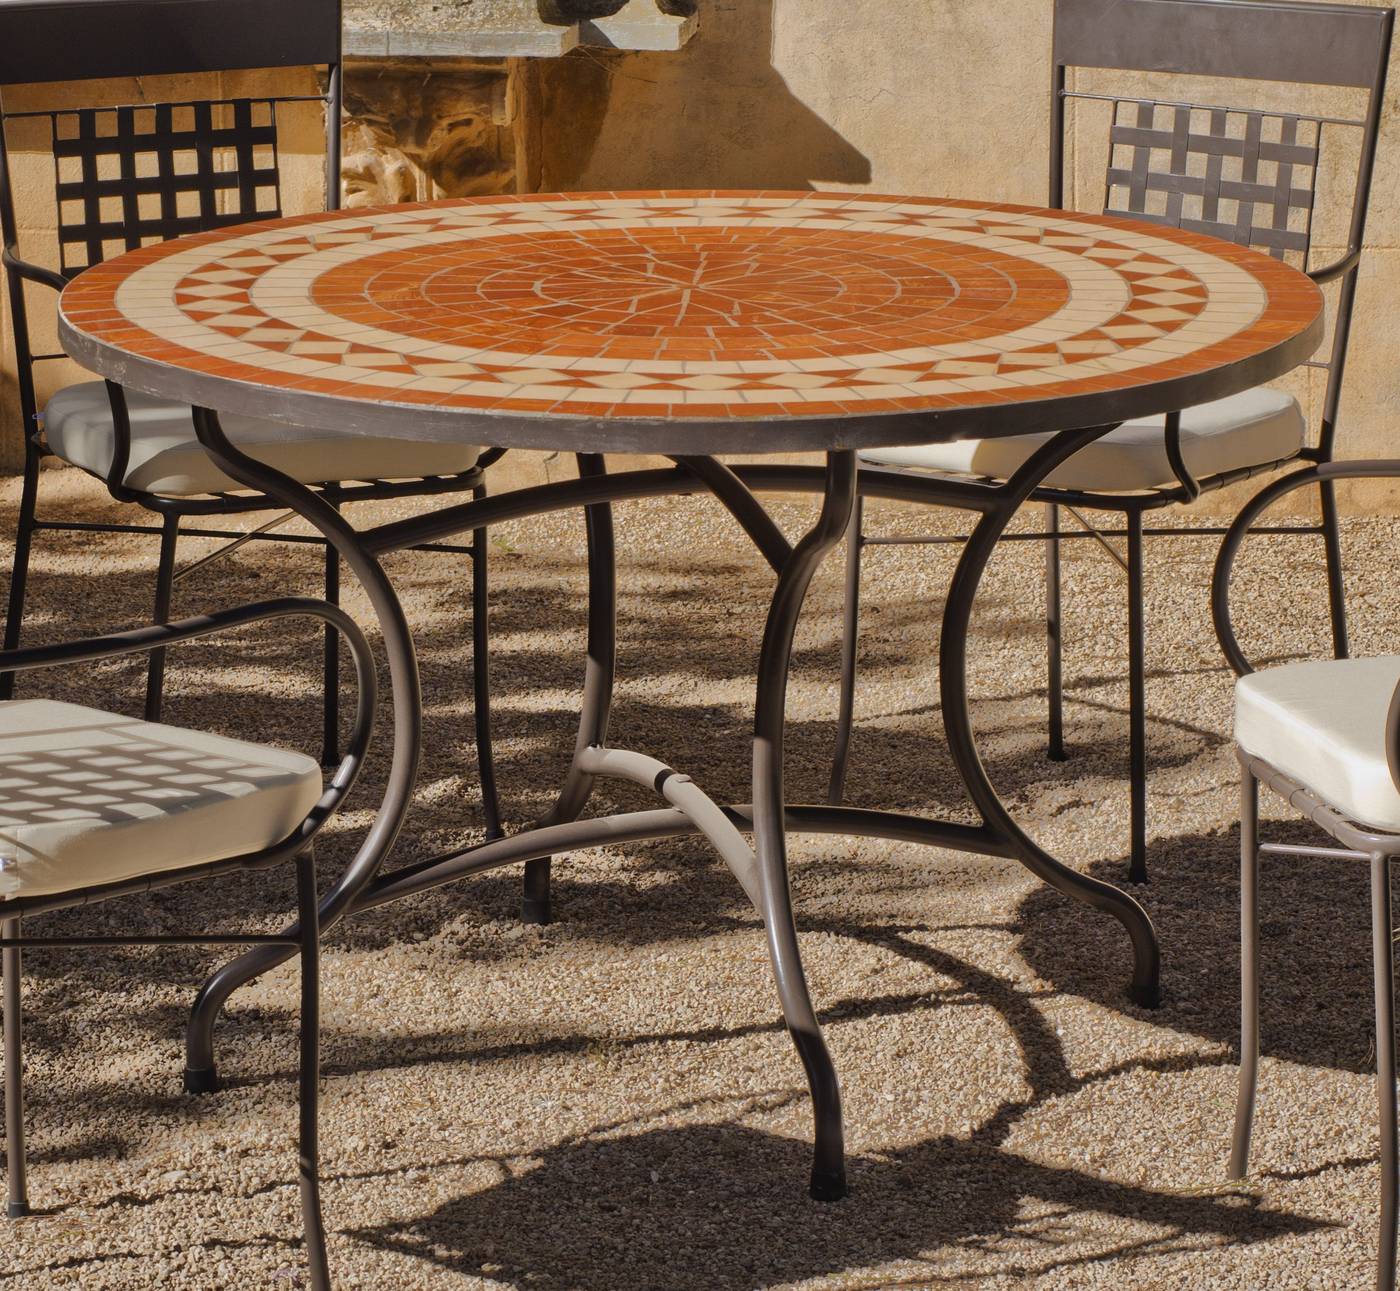 Set Mosaico Lorni-Bergamo 120-6 - Conjunto de forja para jardín: 1 mesa con panel mosaico + 6 sillones de ratán sintético + 6 cojines